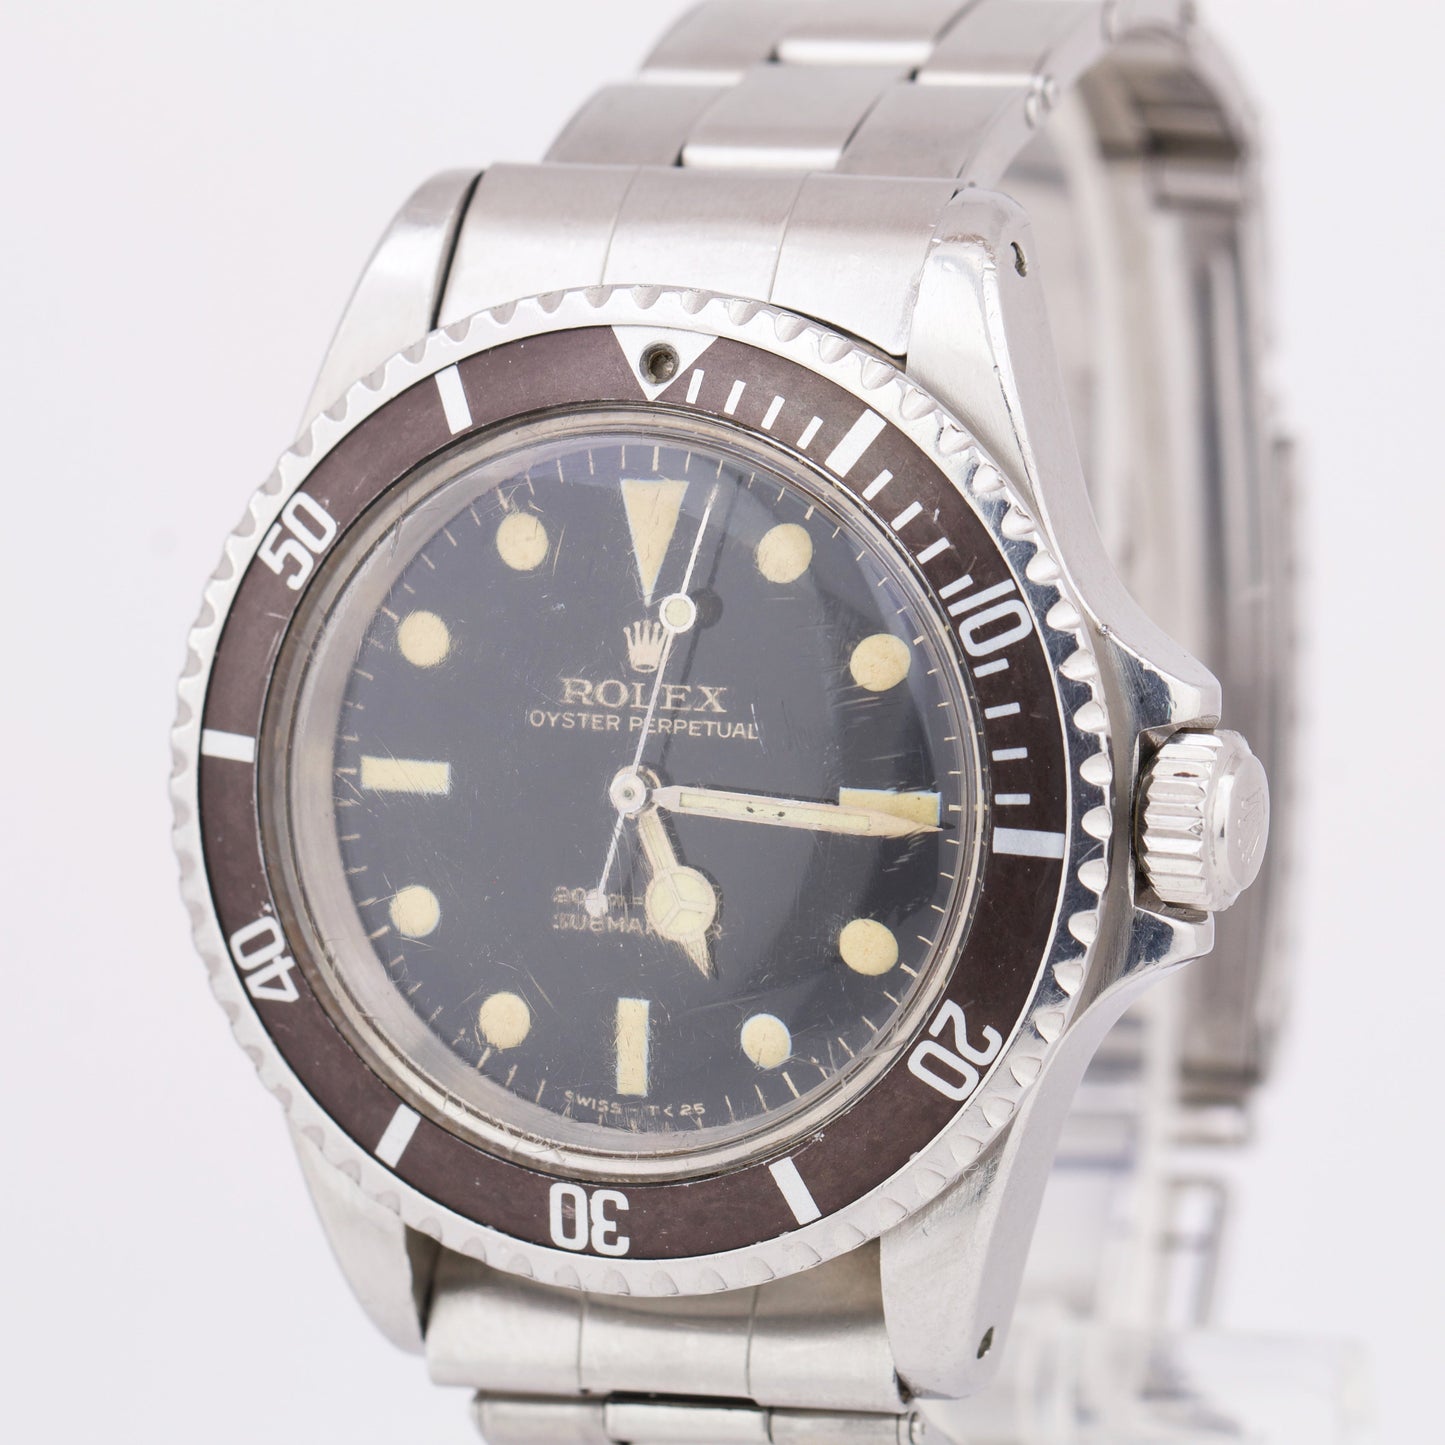 VINTAGE 1966 Rolex Submariner BART SIMPSON Stainless Steel GILT Black Watch 5513